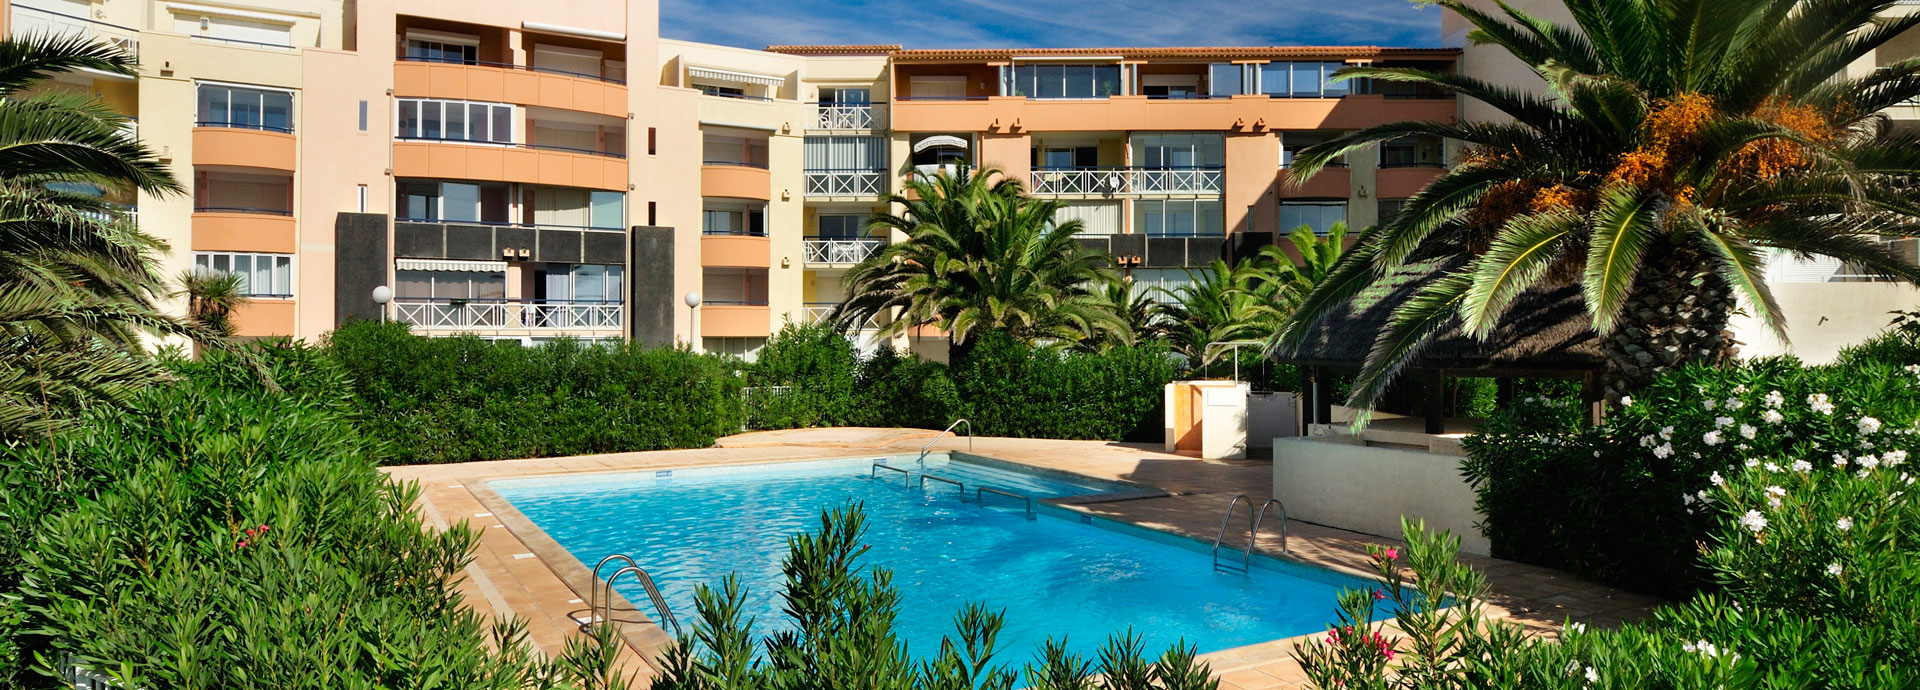 location vacances au Cap d'Agde : résidence Savanna Beach